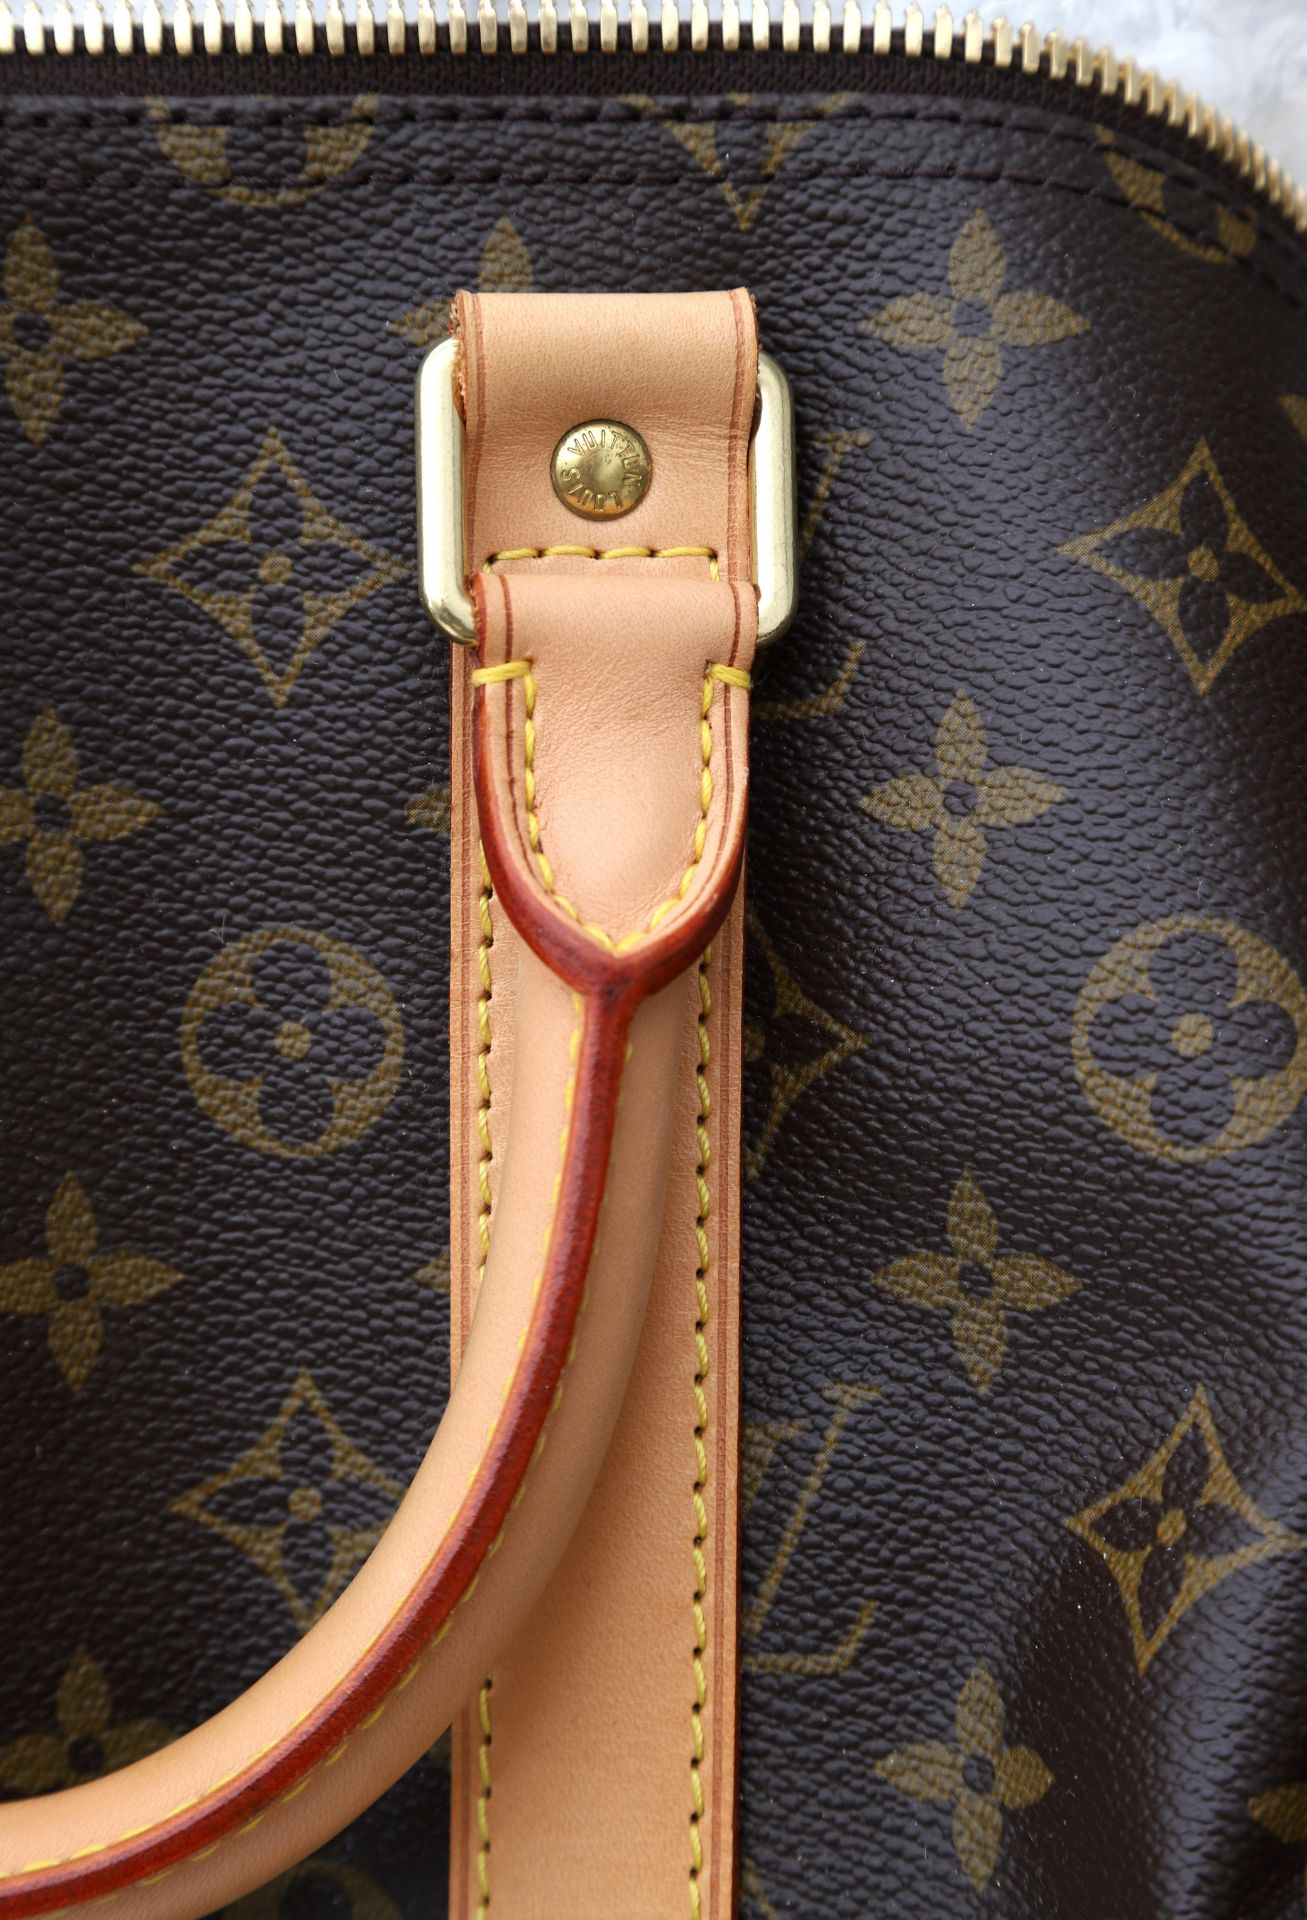 An original vintage Louis Vuitton travel bag, model Keepall 55 - Bild 6 aus 13